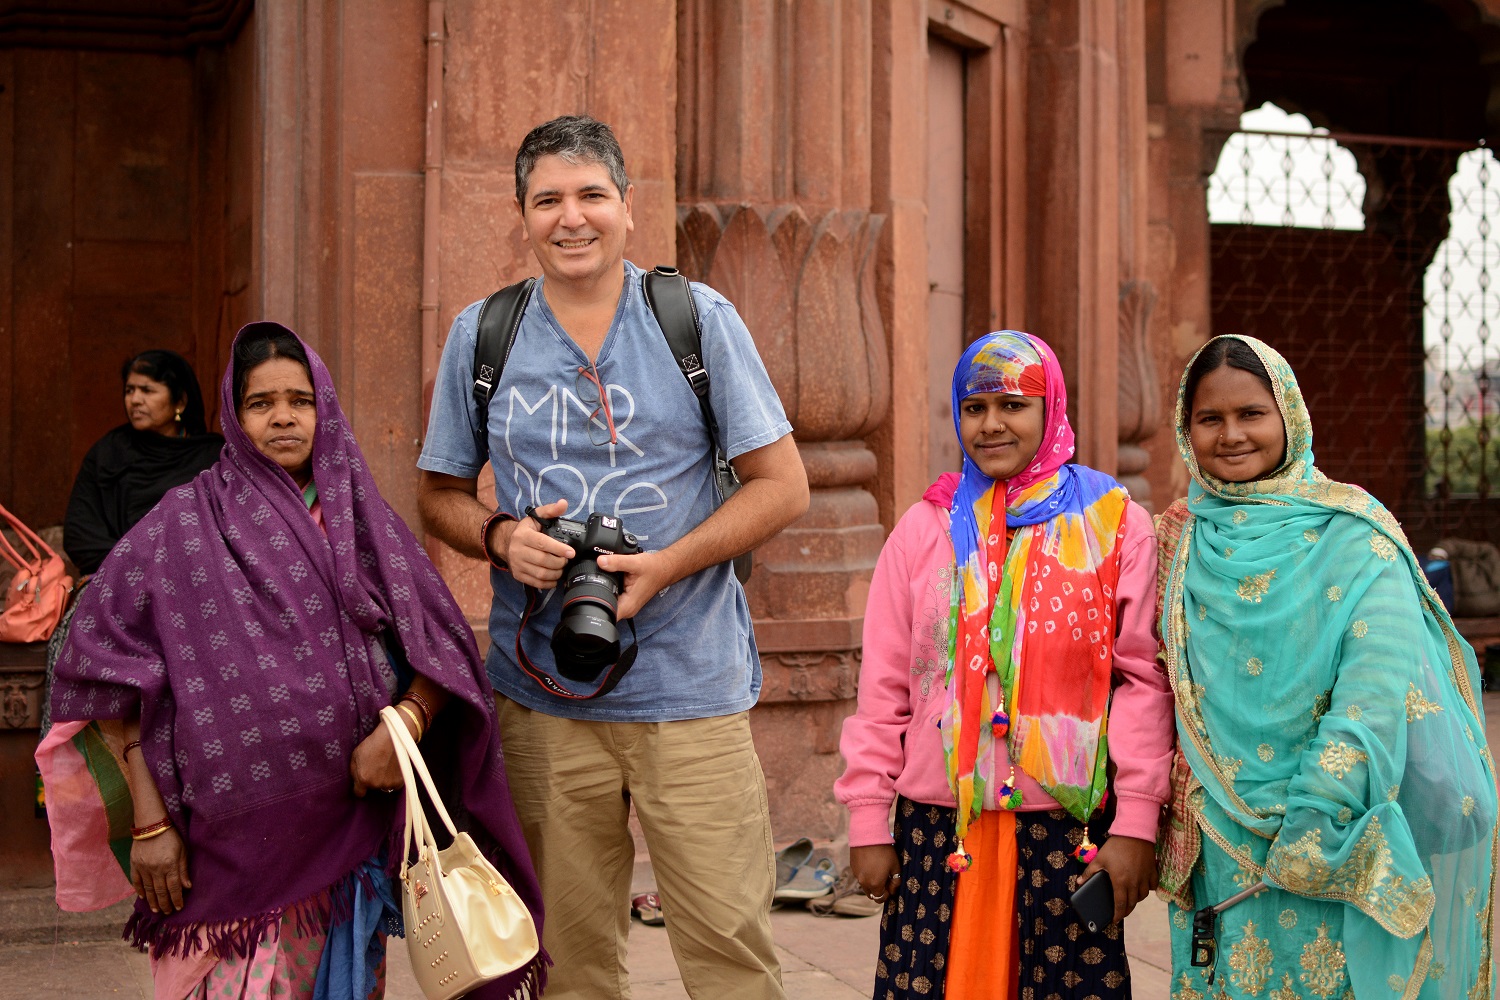  Cláudio Colavolpe prepara 3ª expedição fotográfica para a Índia